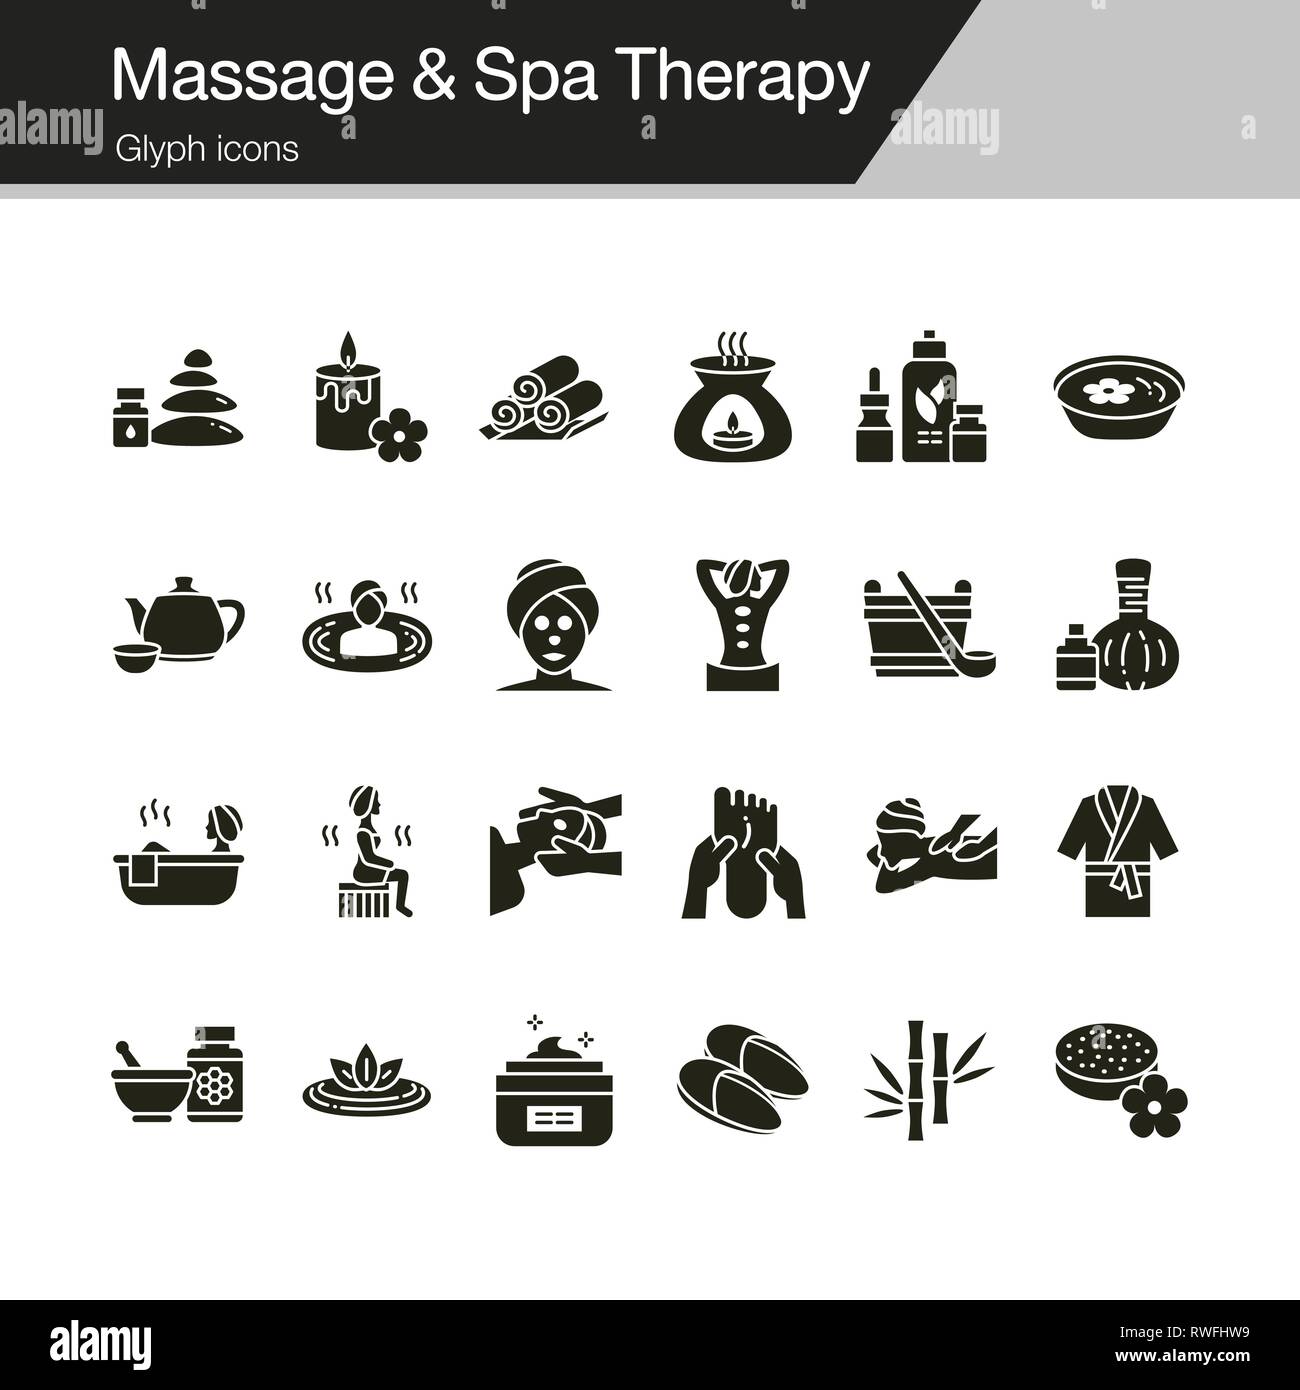 Massage und Spa Therapie Symbole. Glyphe Design. Für die Präsentation, Grafik Design, Mobile, Web Design, Infografiken, UI. Vector Illustration. Stock Vektor